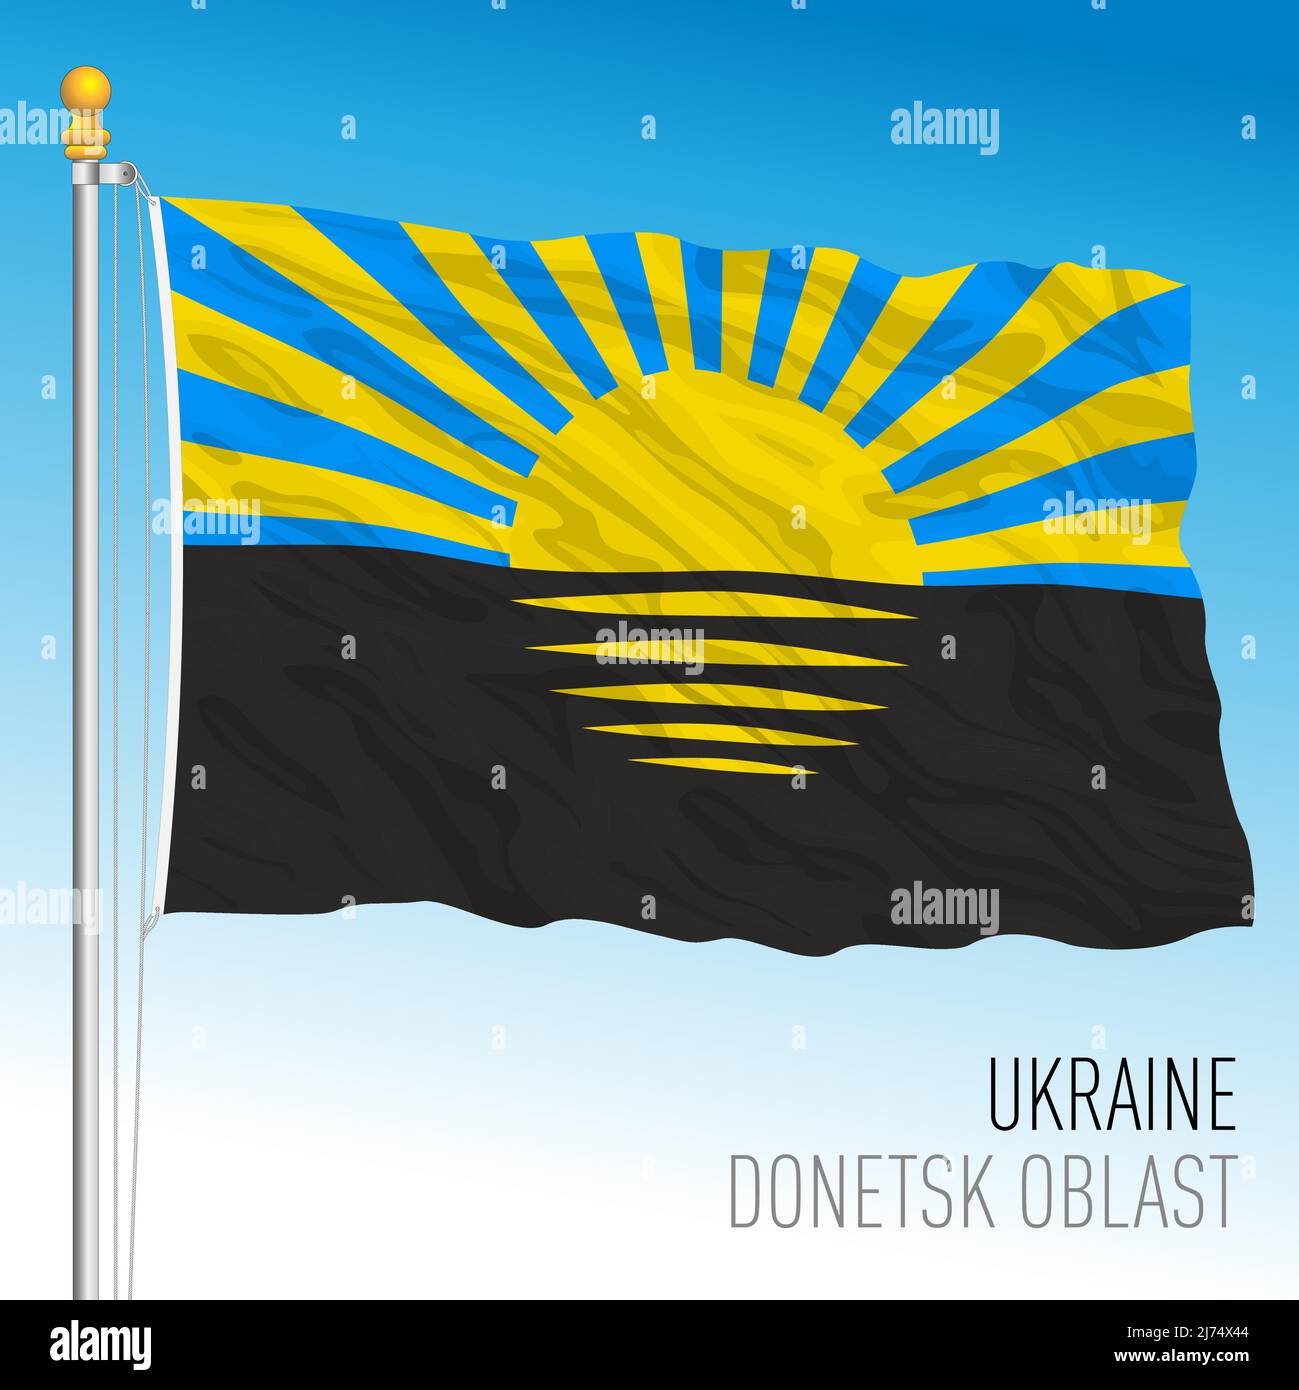 Ukraine, Donetsk Oblast flag, vector illustration Stock Vector